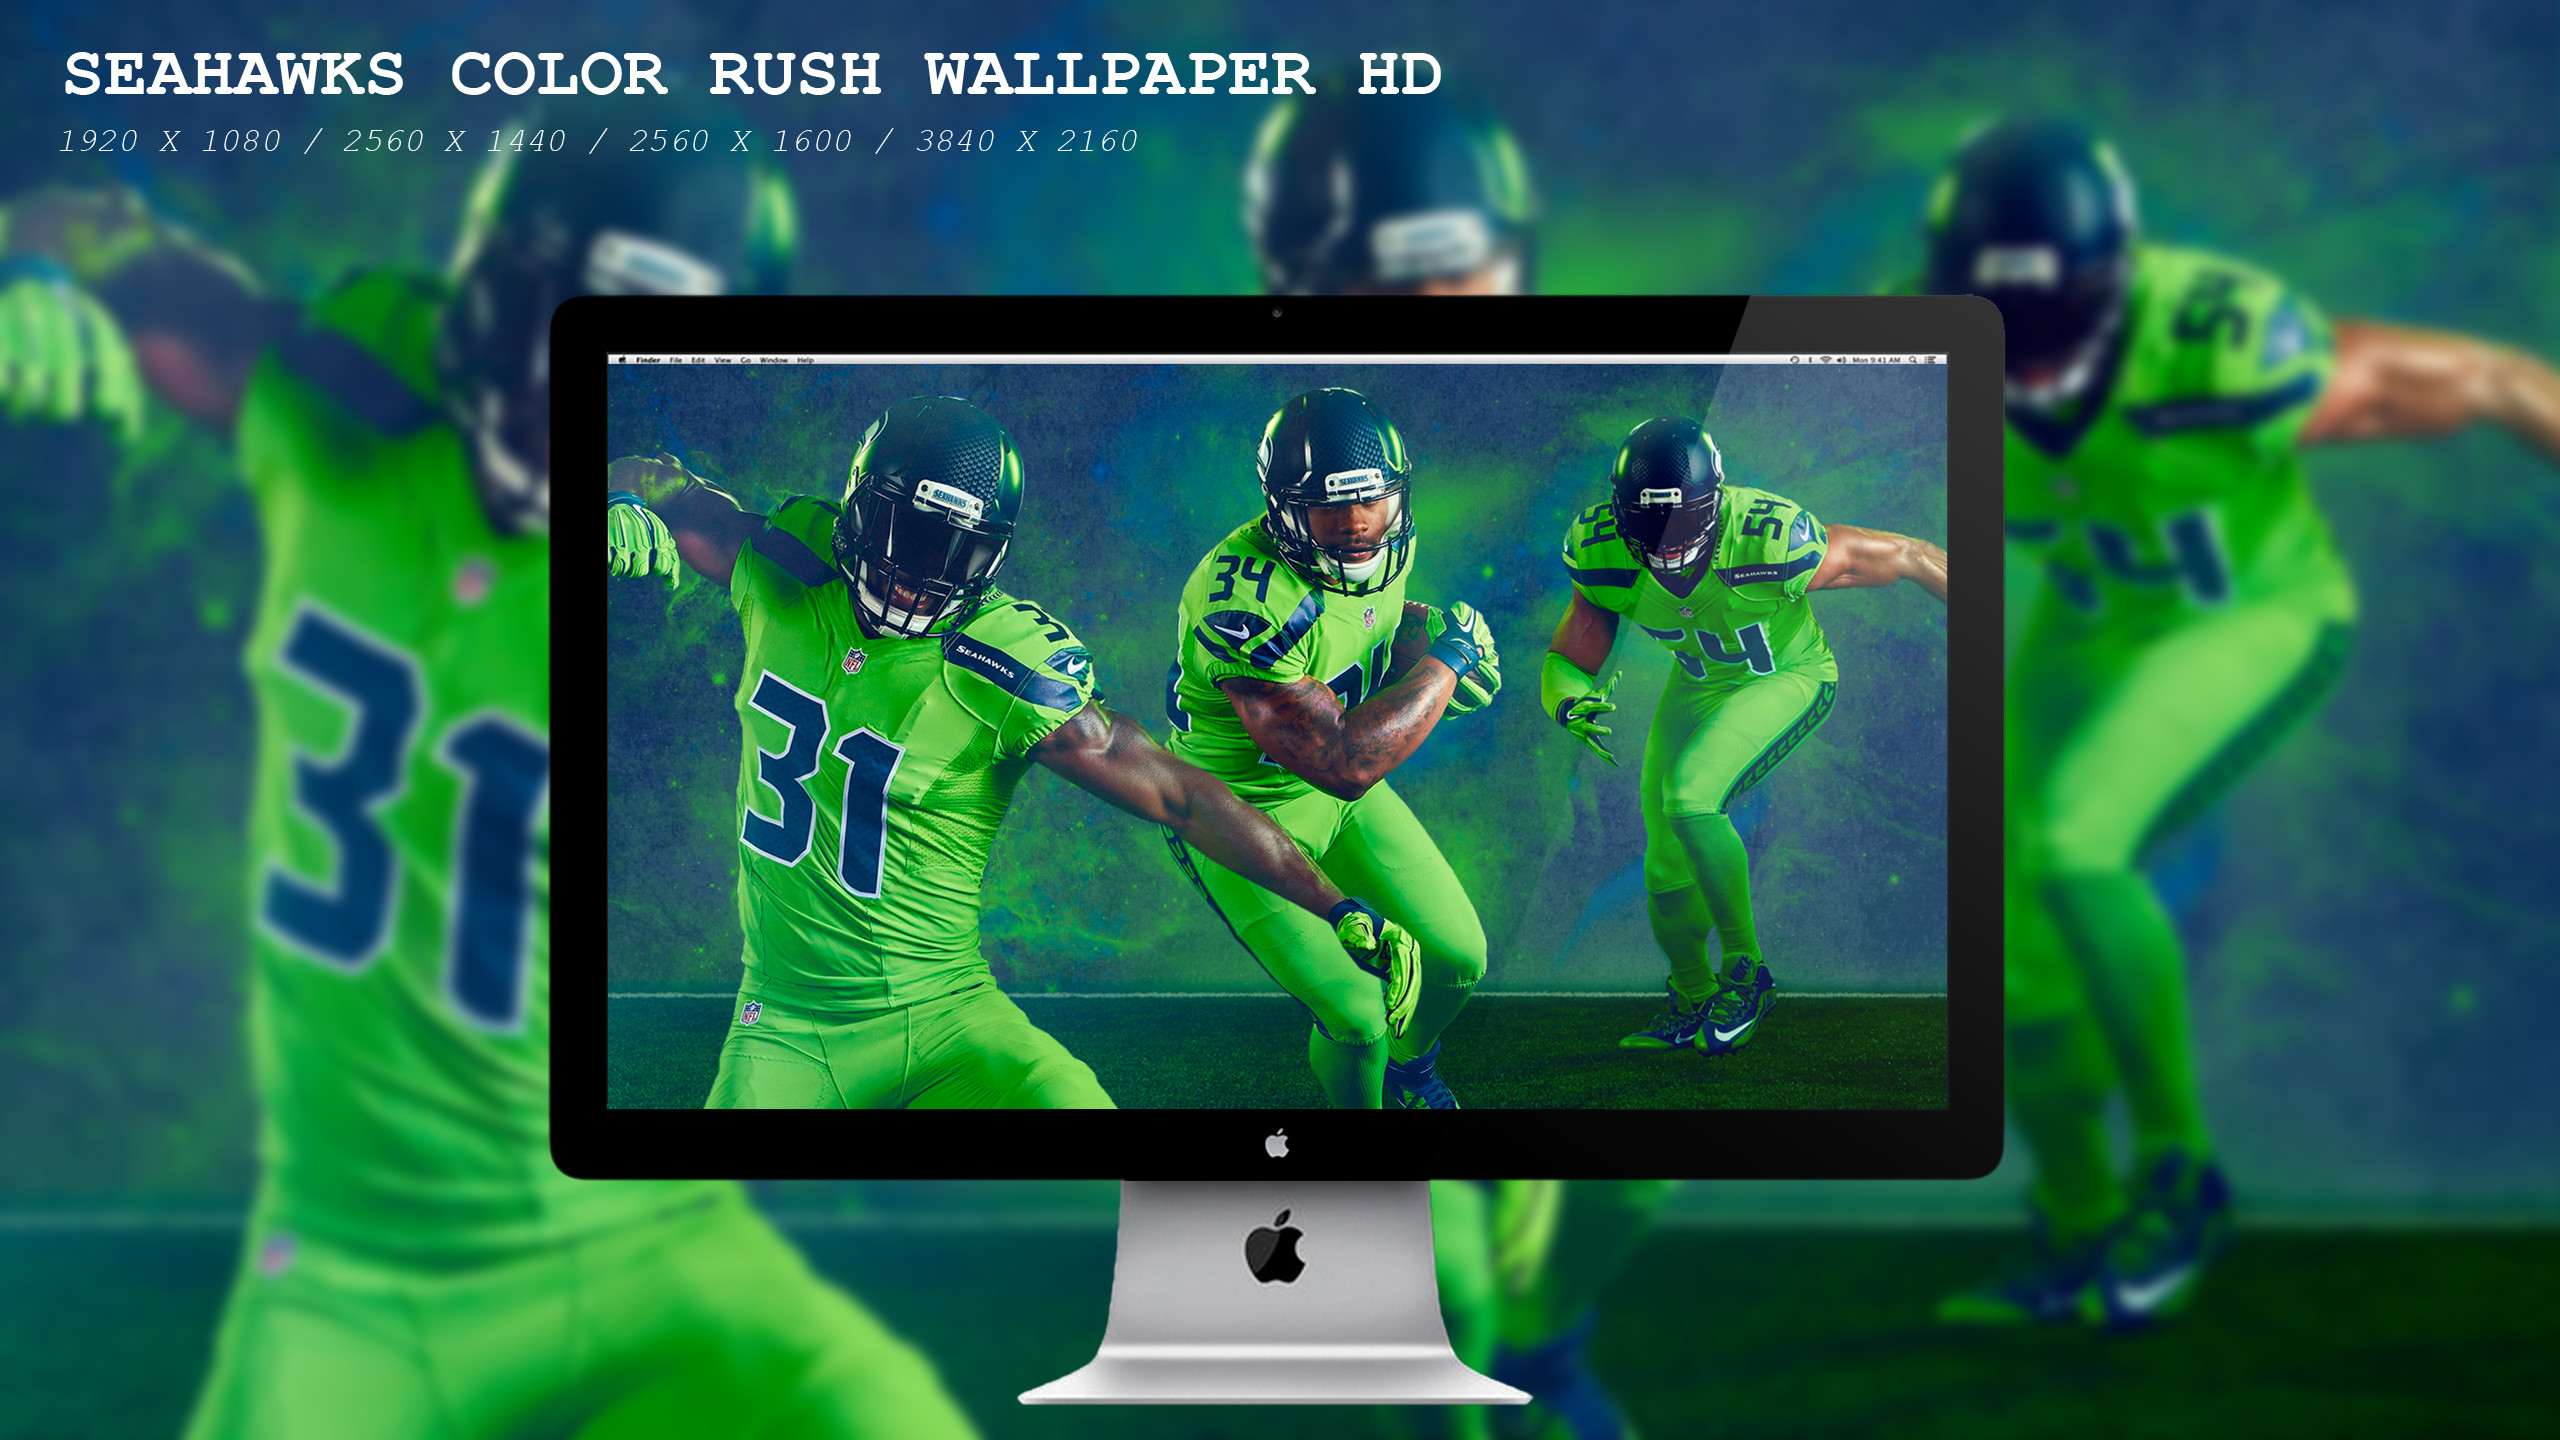 2560x1440 ... Seahawks Color Rush Wallpaper HD by BeAware8